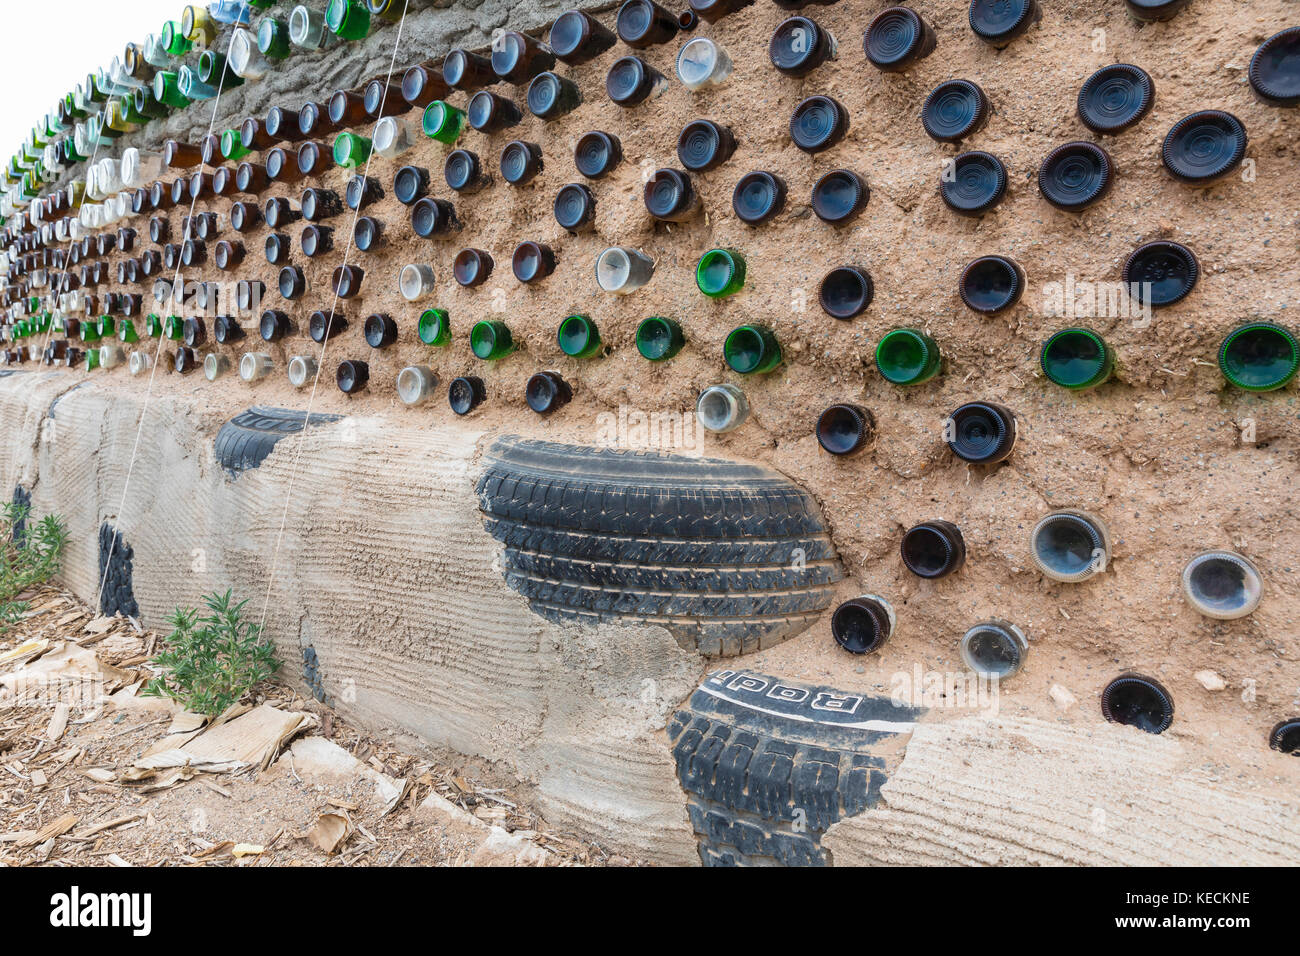 Botellas de vidrio y neumáticos usados usados en la construcción de la pared de la nave terrestre, Comunidad de la nave terrestre del Gran Mundo, cerca de Taos, Nuevo México, EE.UU Foto de stock